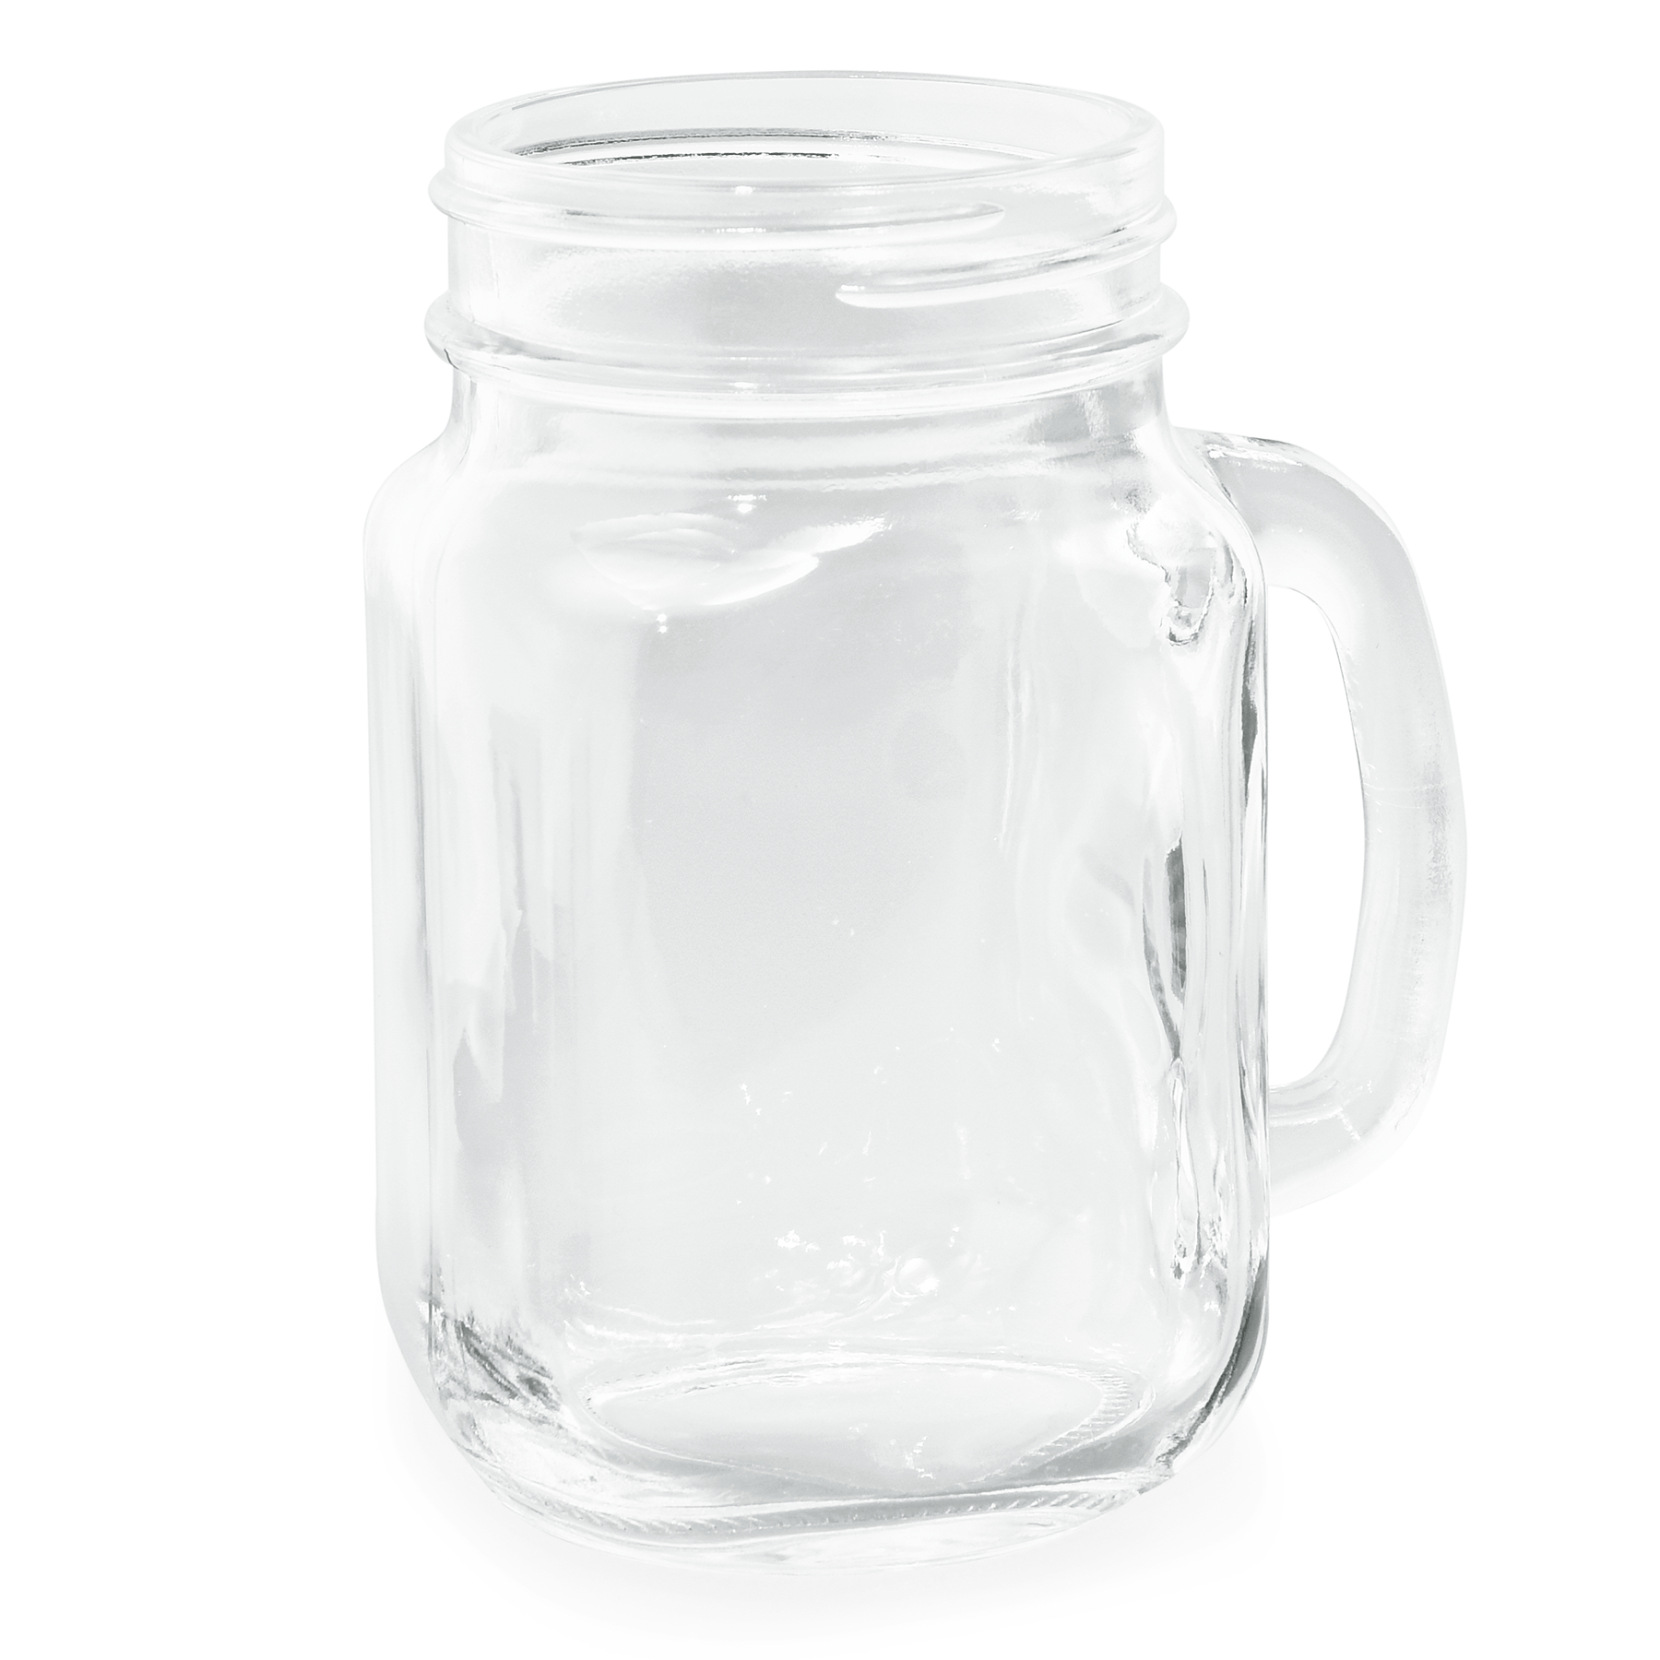 Trinkglas mit Henkel, 0,45 ltr.